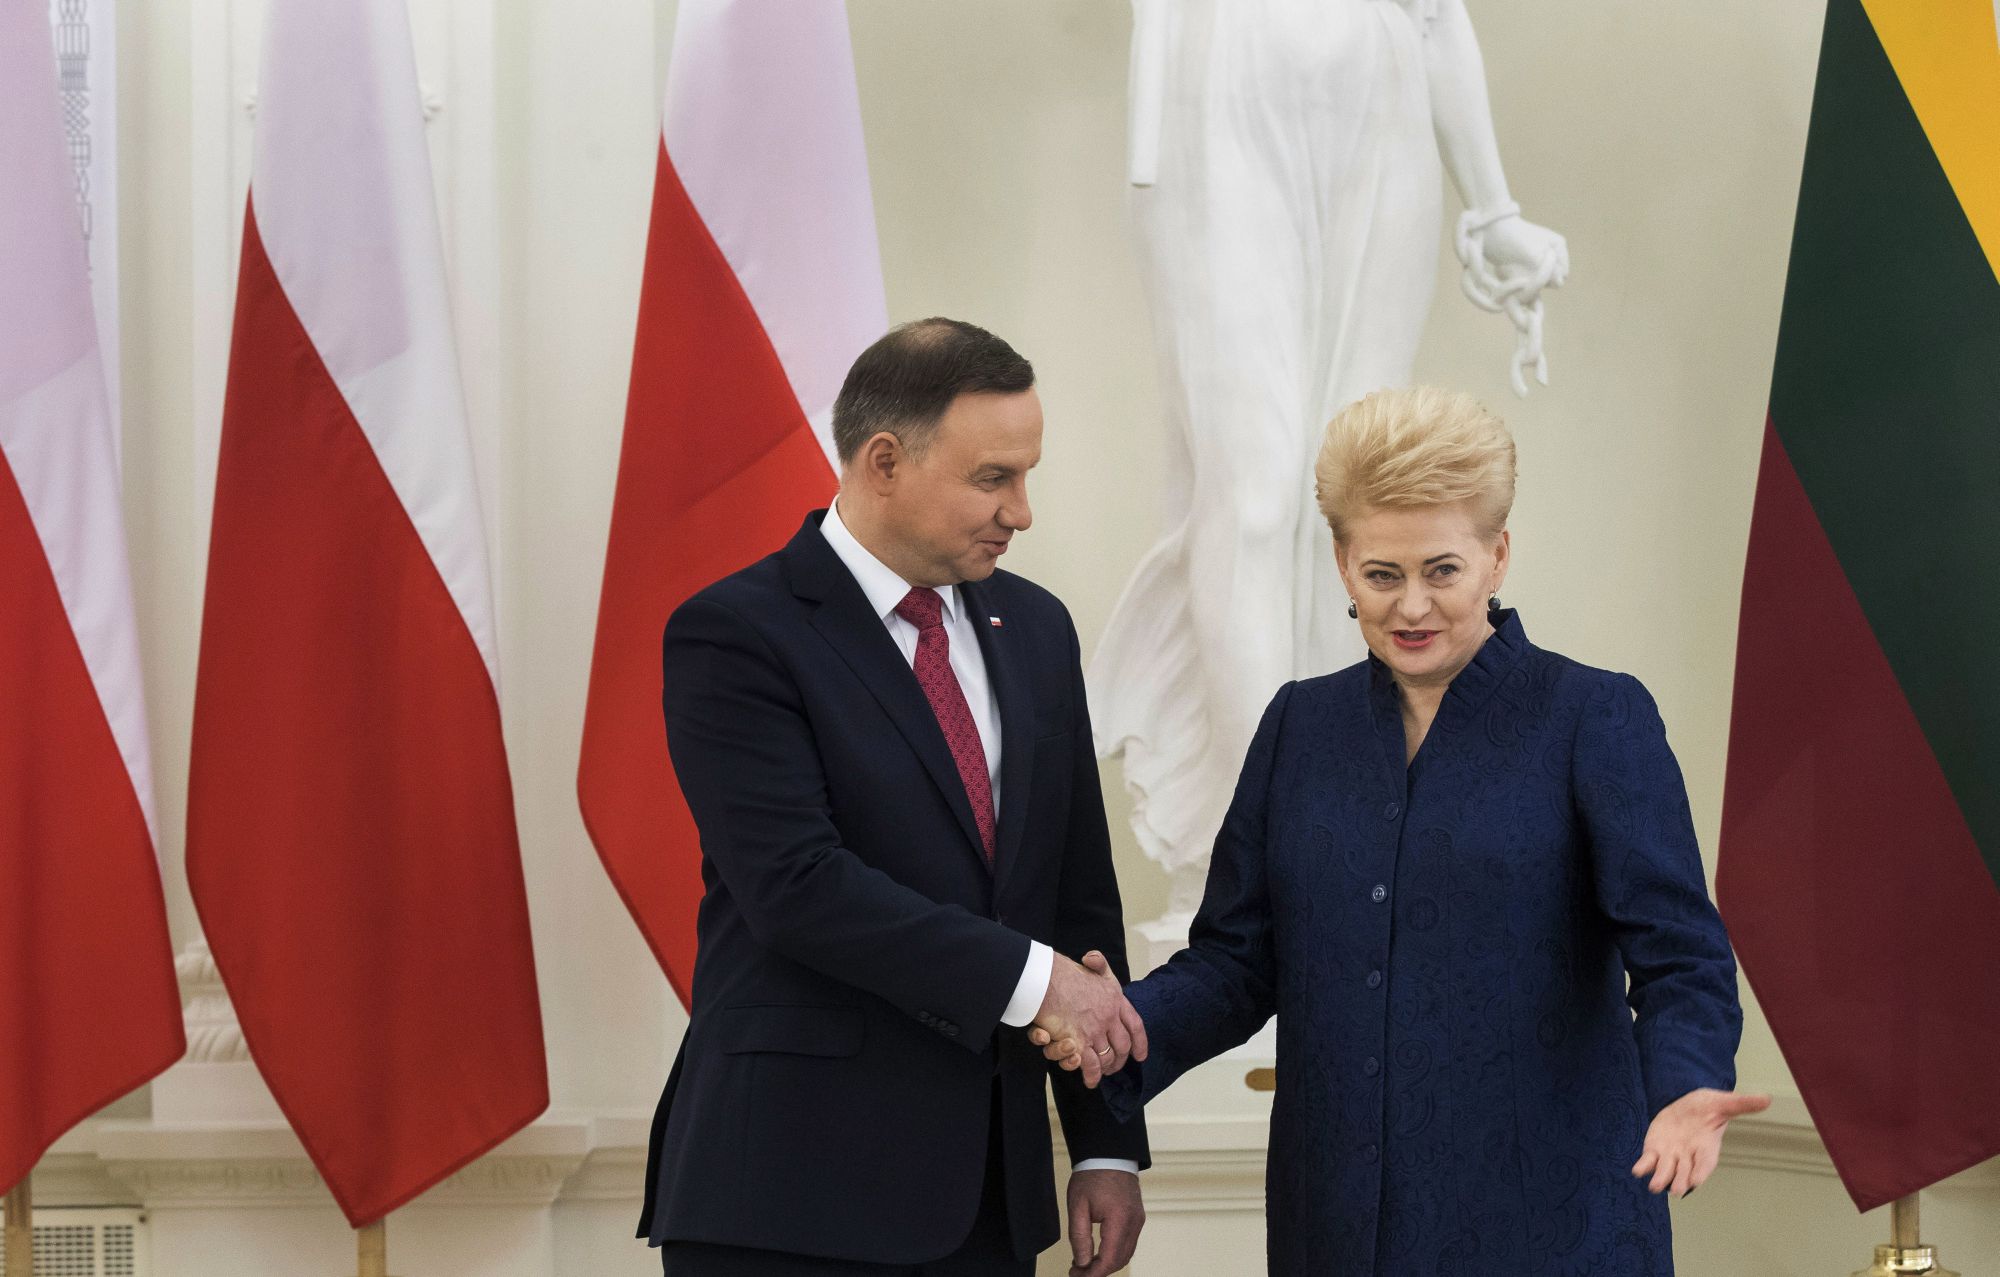 Dalia Grybauskaite litván államfő (j) fogadja a megbeszélésükre érkező lengyel hivatali partnerét, Andrzej Dudát a vilniusi elnöki palotában 2018. február 17-én. (MTI/AP/Mindaugas Kulbis)